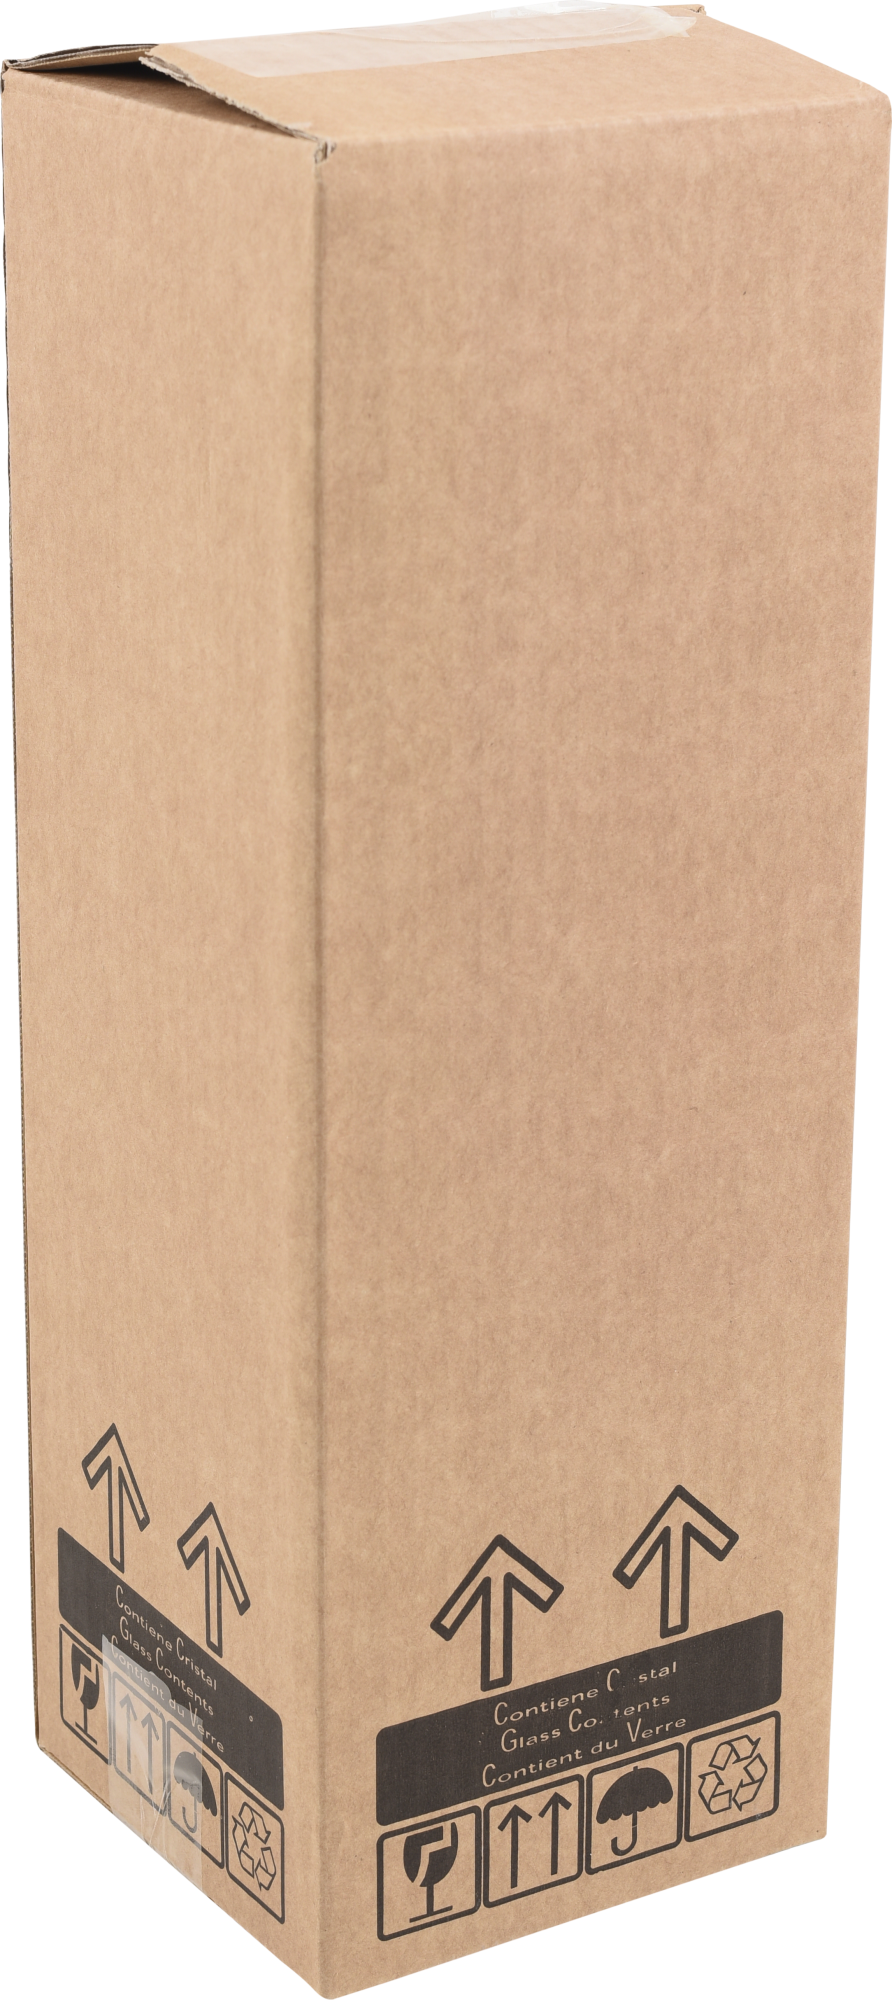 Caja de cartón de 8 l de 41x14x14 cm y máx. 10 kg | Leroy Merlin